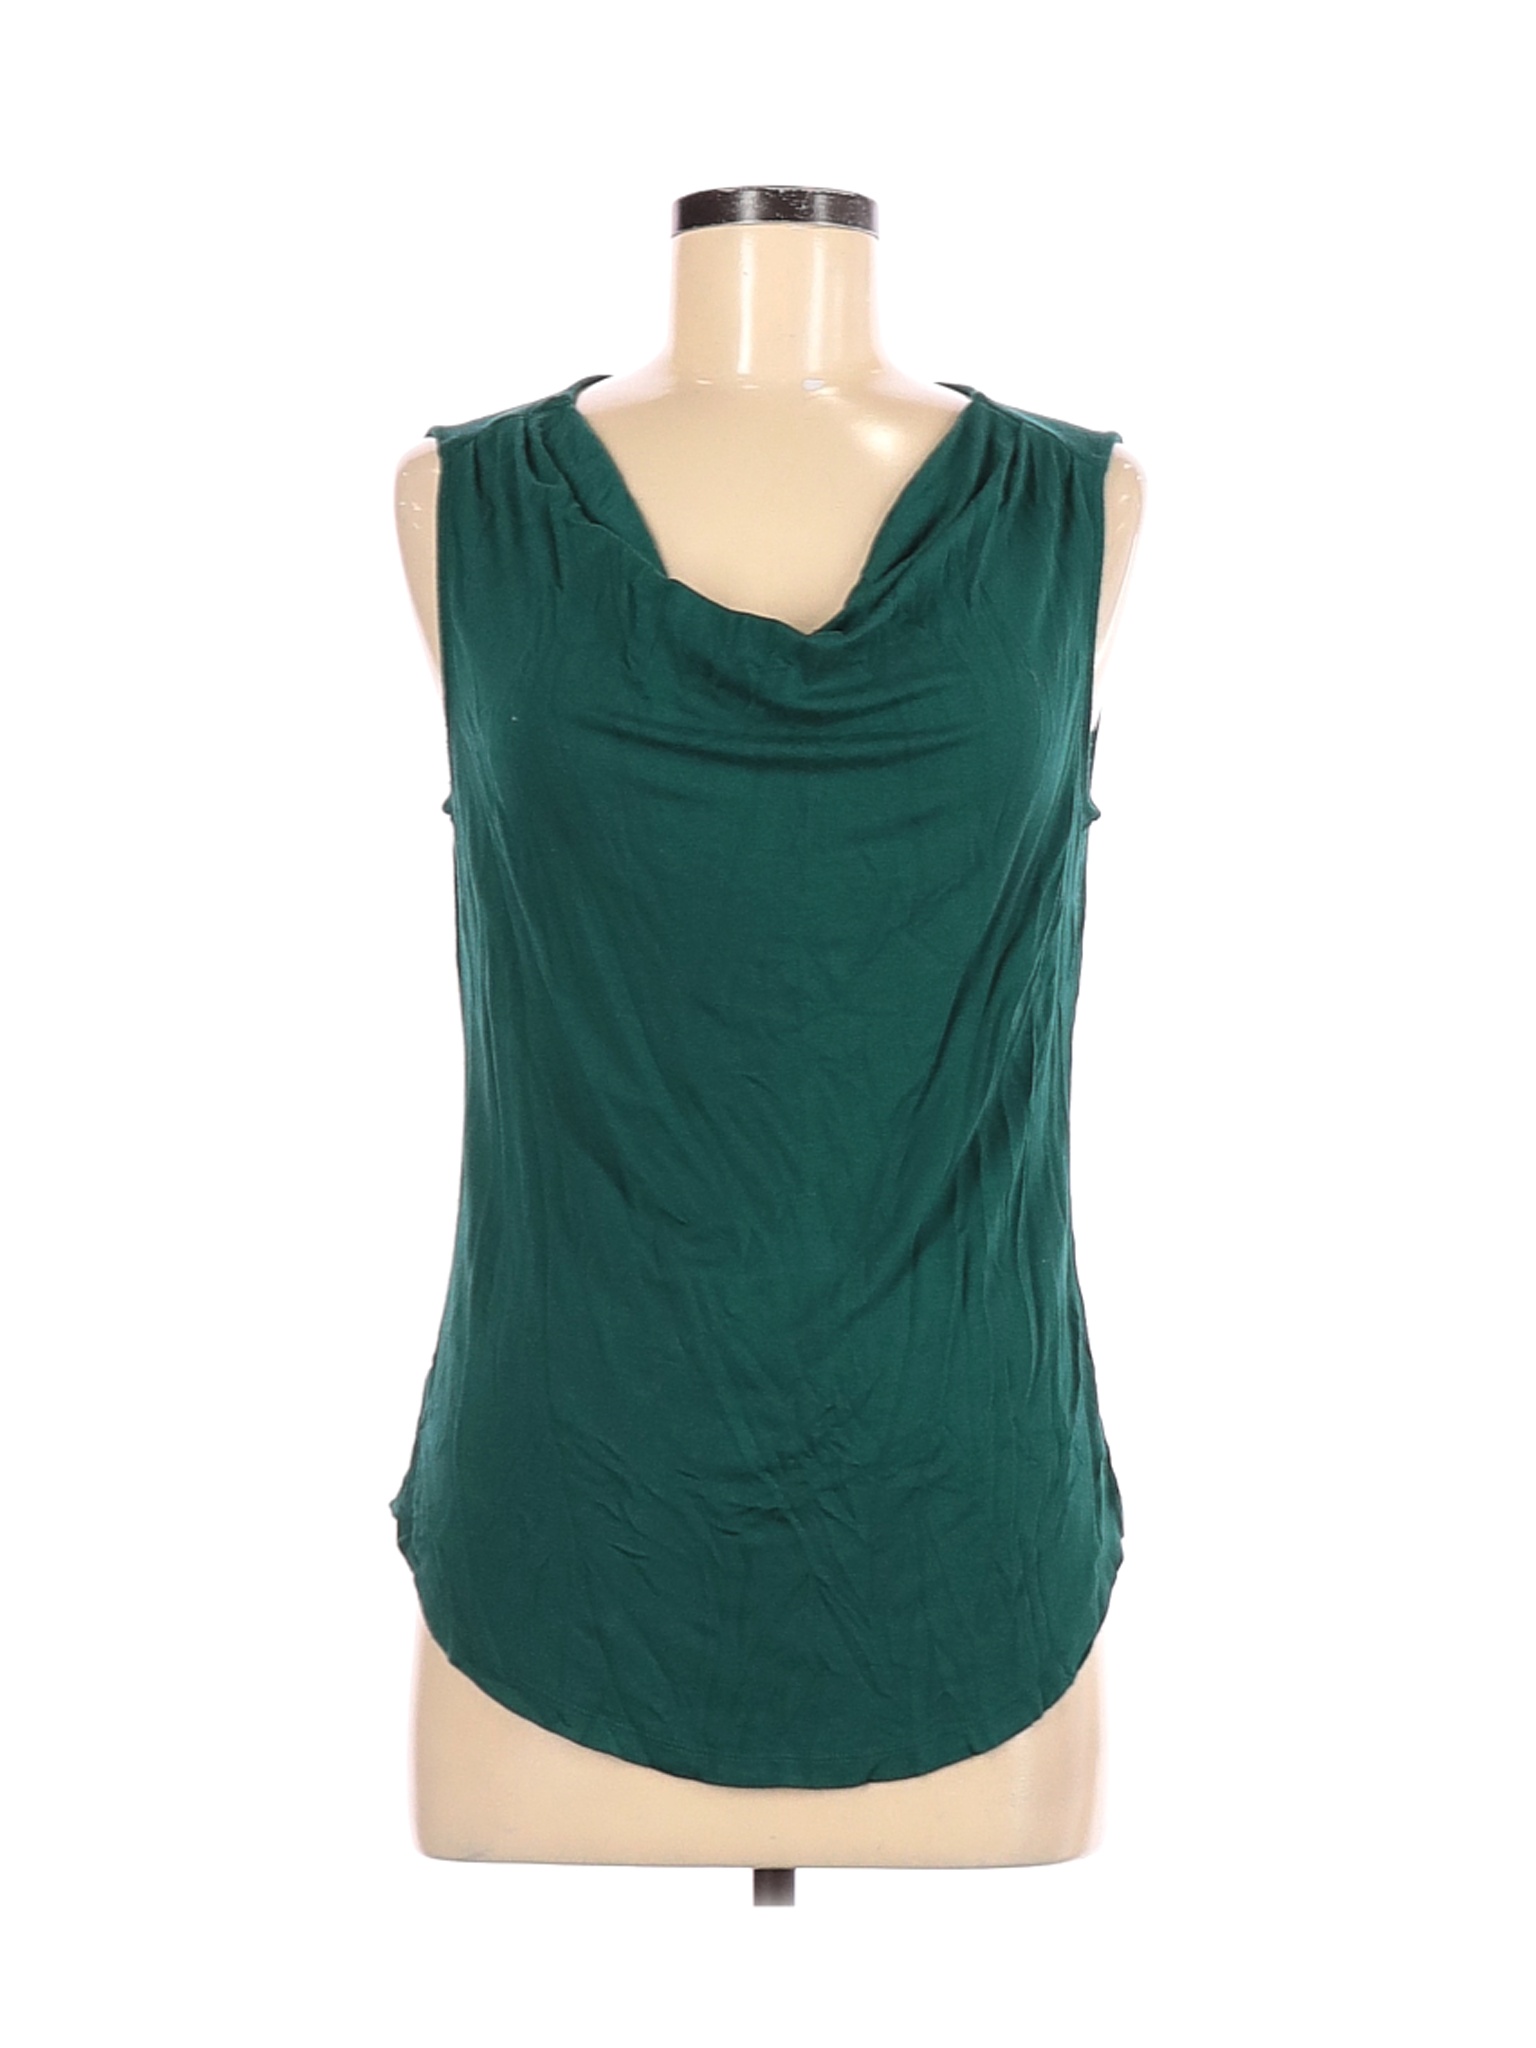 Ann Taylor LOFT Outlet Women Green Sleeveless Top M | eBay